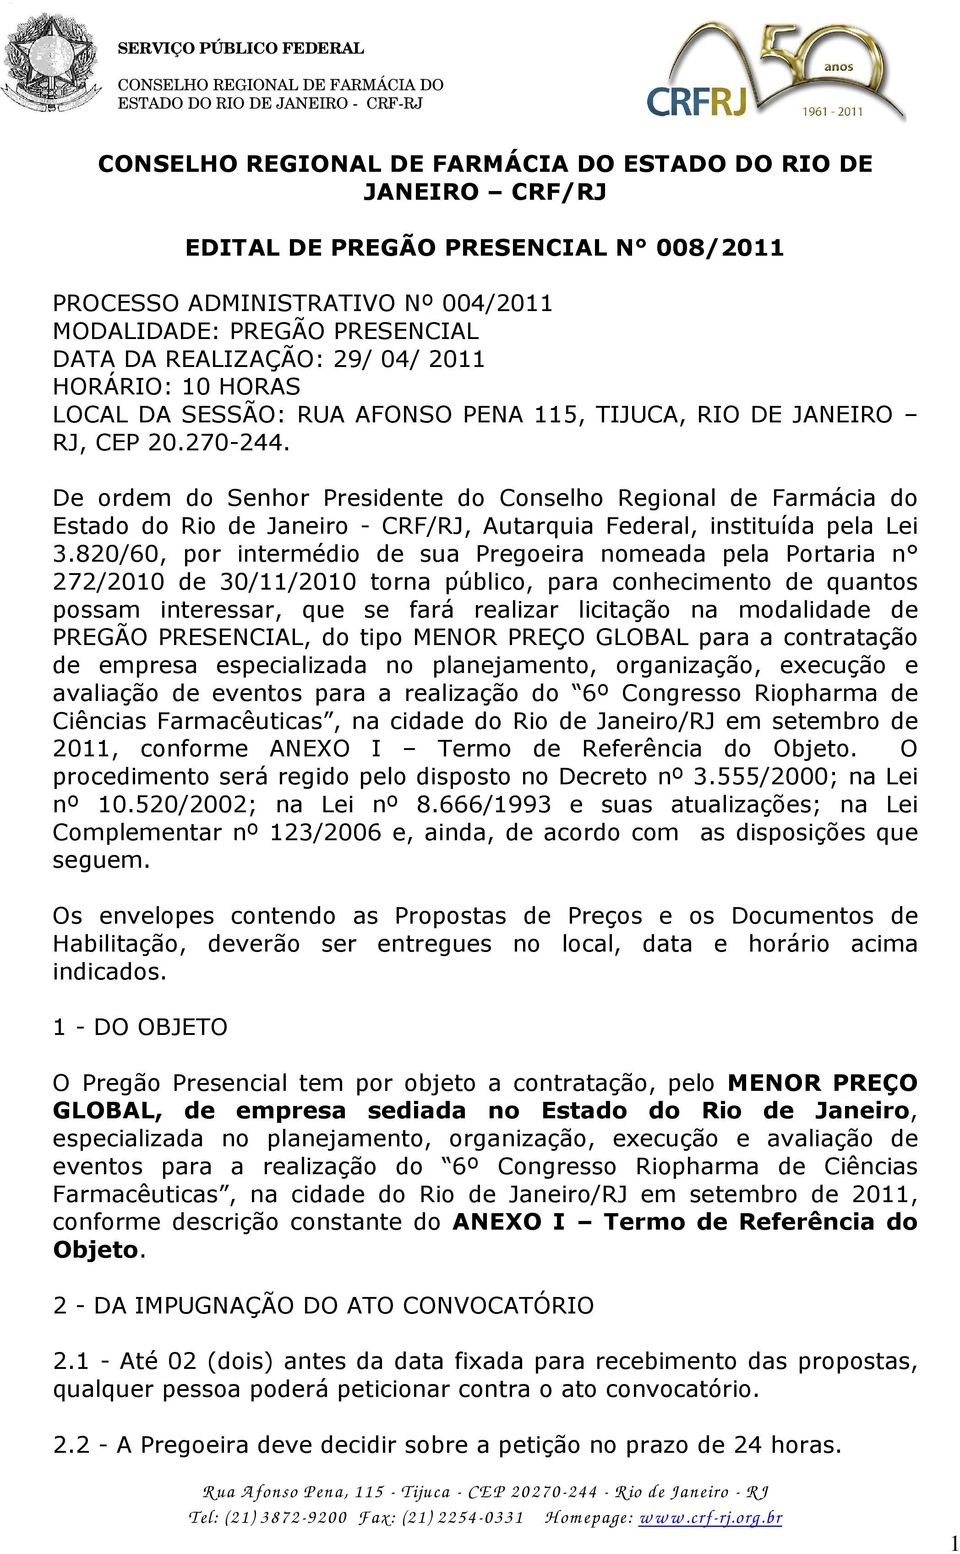 De ordem do Senhor Presidente do Conselho Regional de Farmácia do Estado do Rio de Janeiro - CRF/RJ, Autarquia Federal, instituída pela Lei 3.